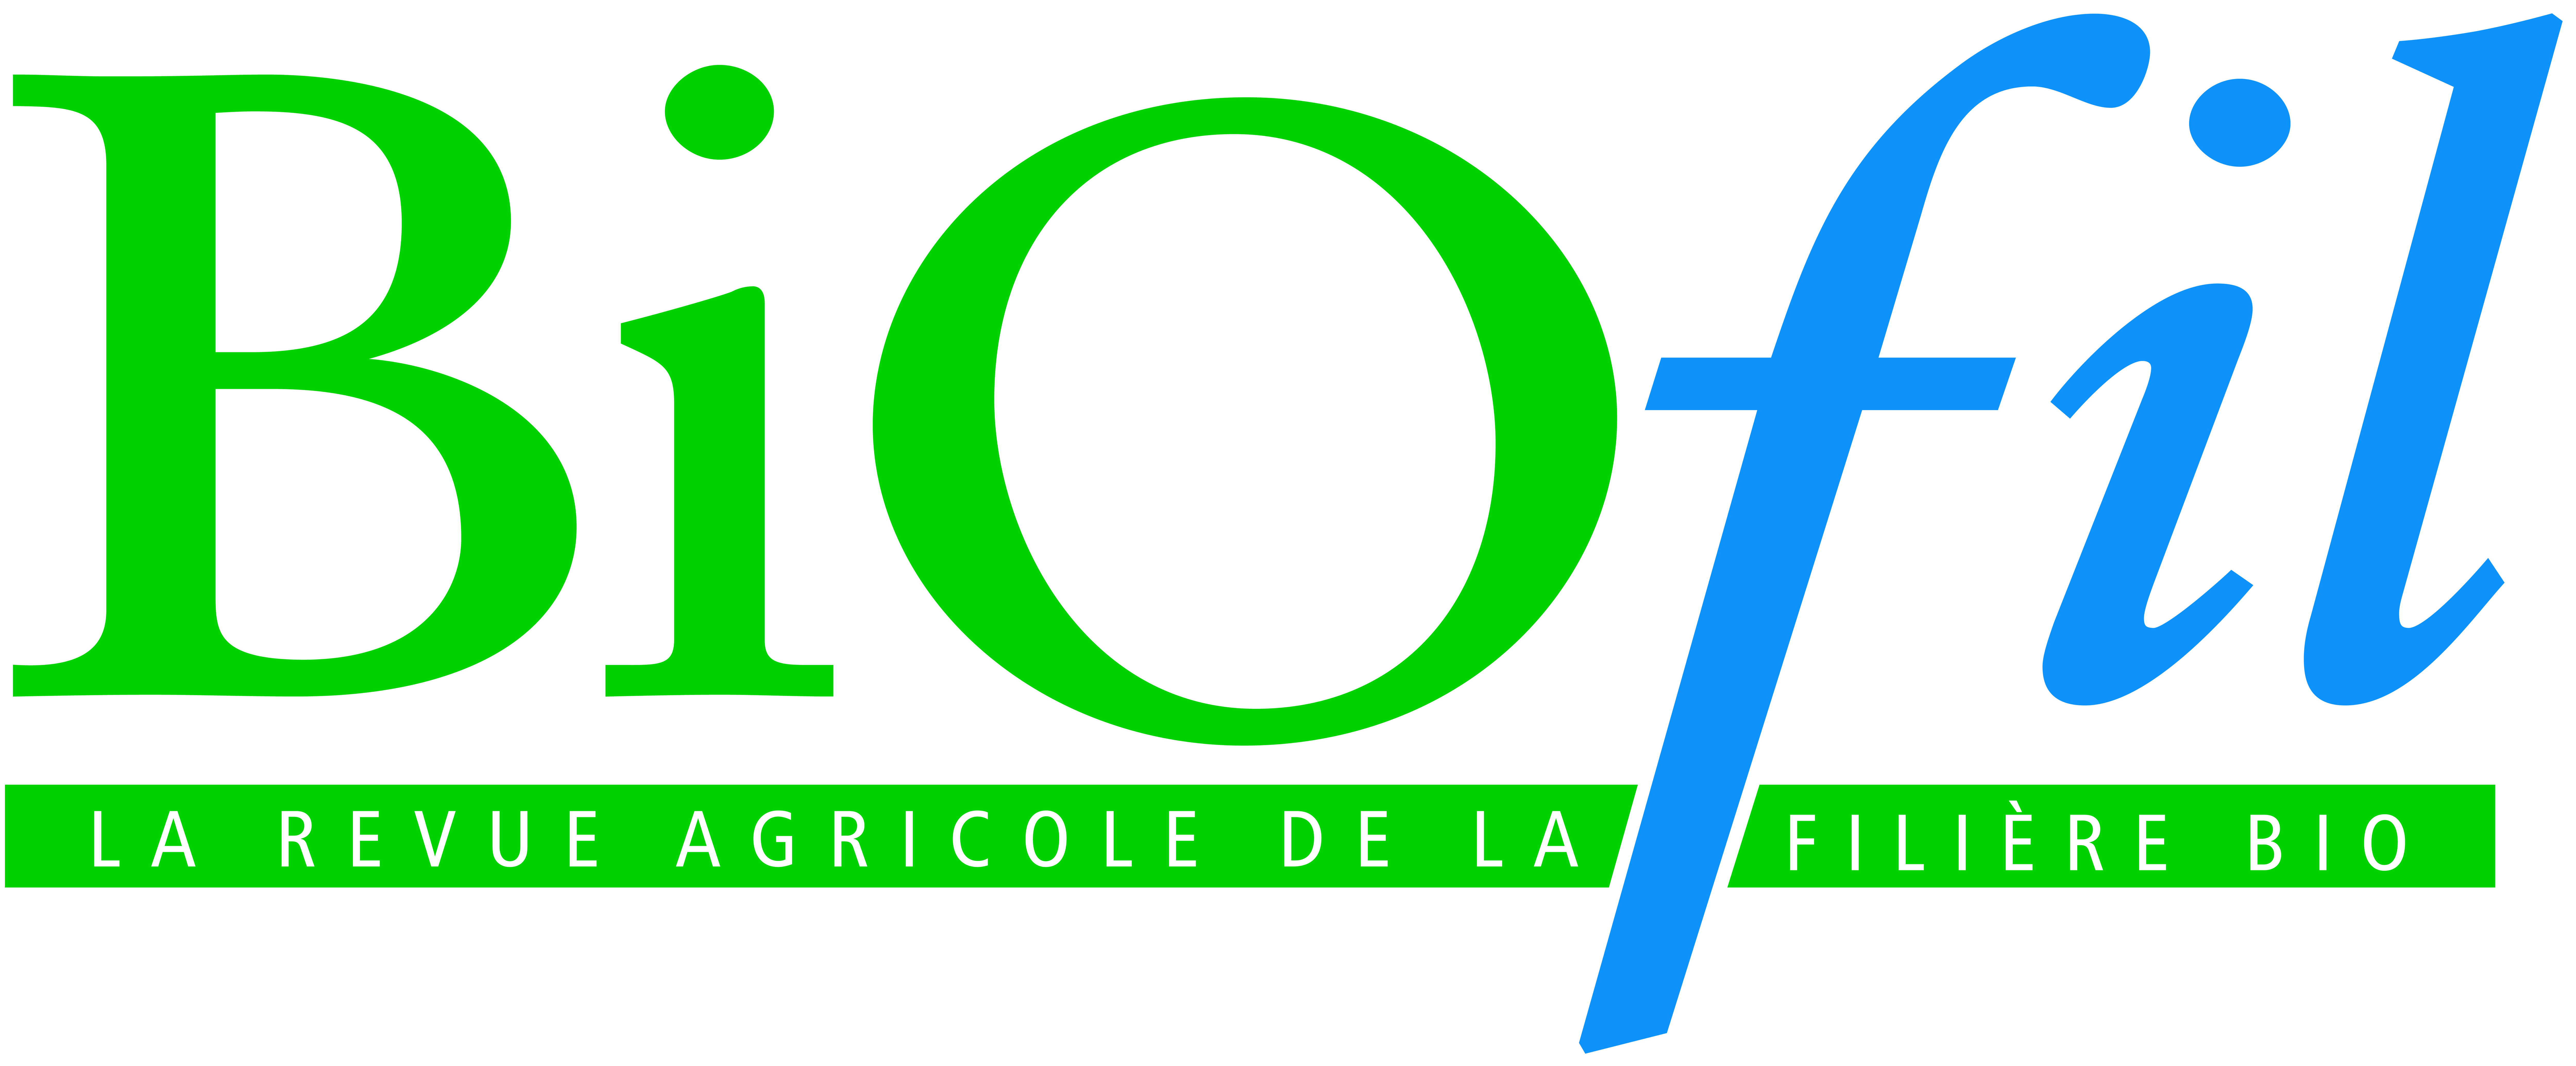 biofil logo hd